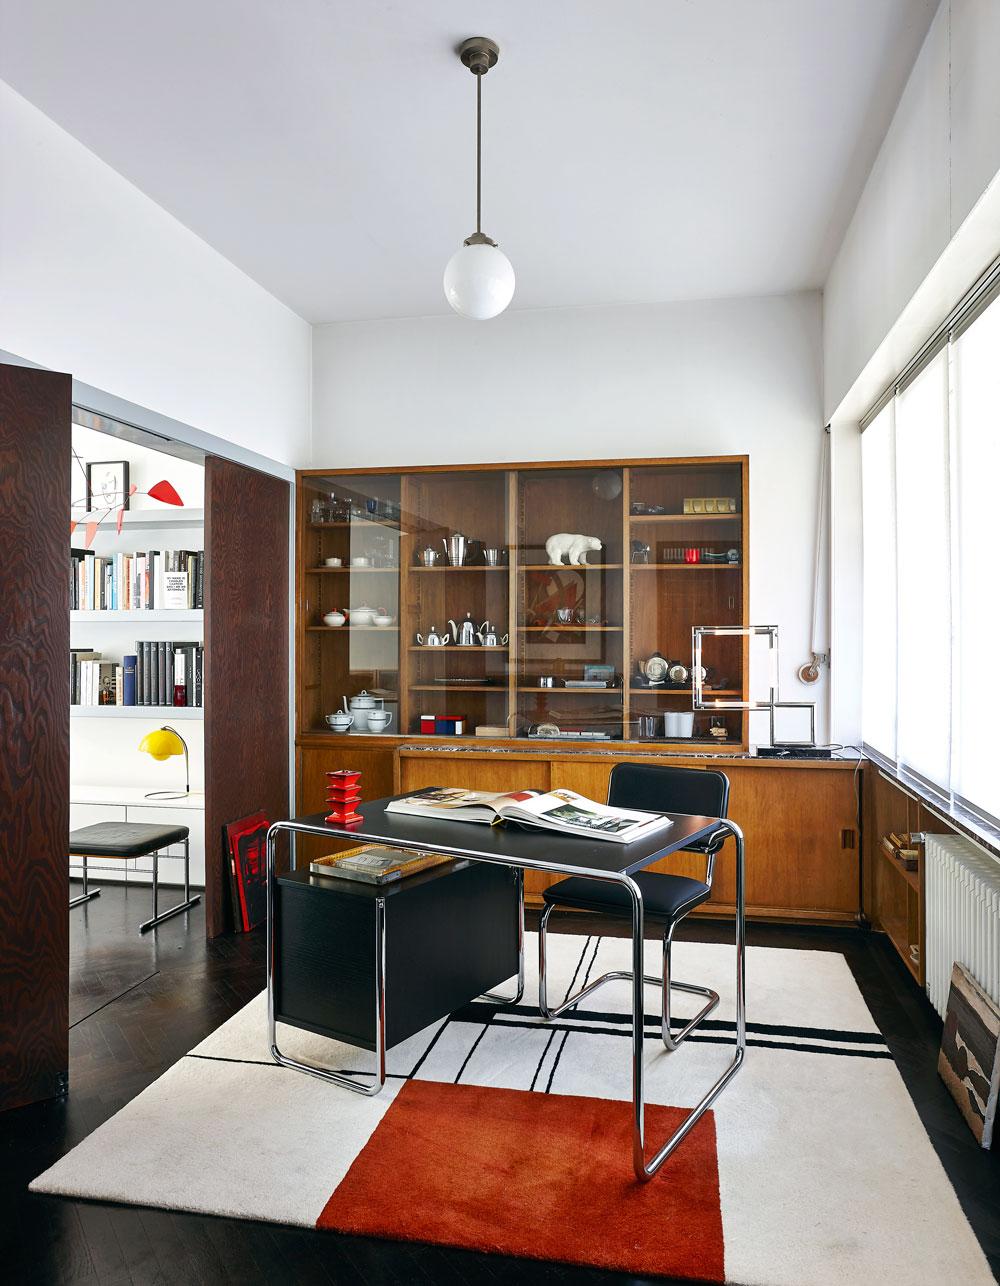 Le bureau, intact, avec son mobilier tubulaire, sa porte coulissante originale, son armoire sur mesure et sa lampe de Jacques Adnet.